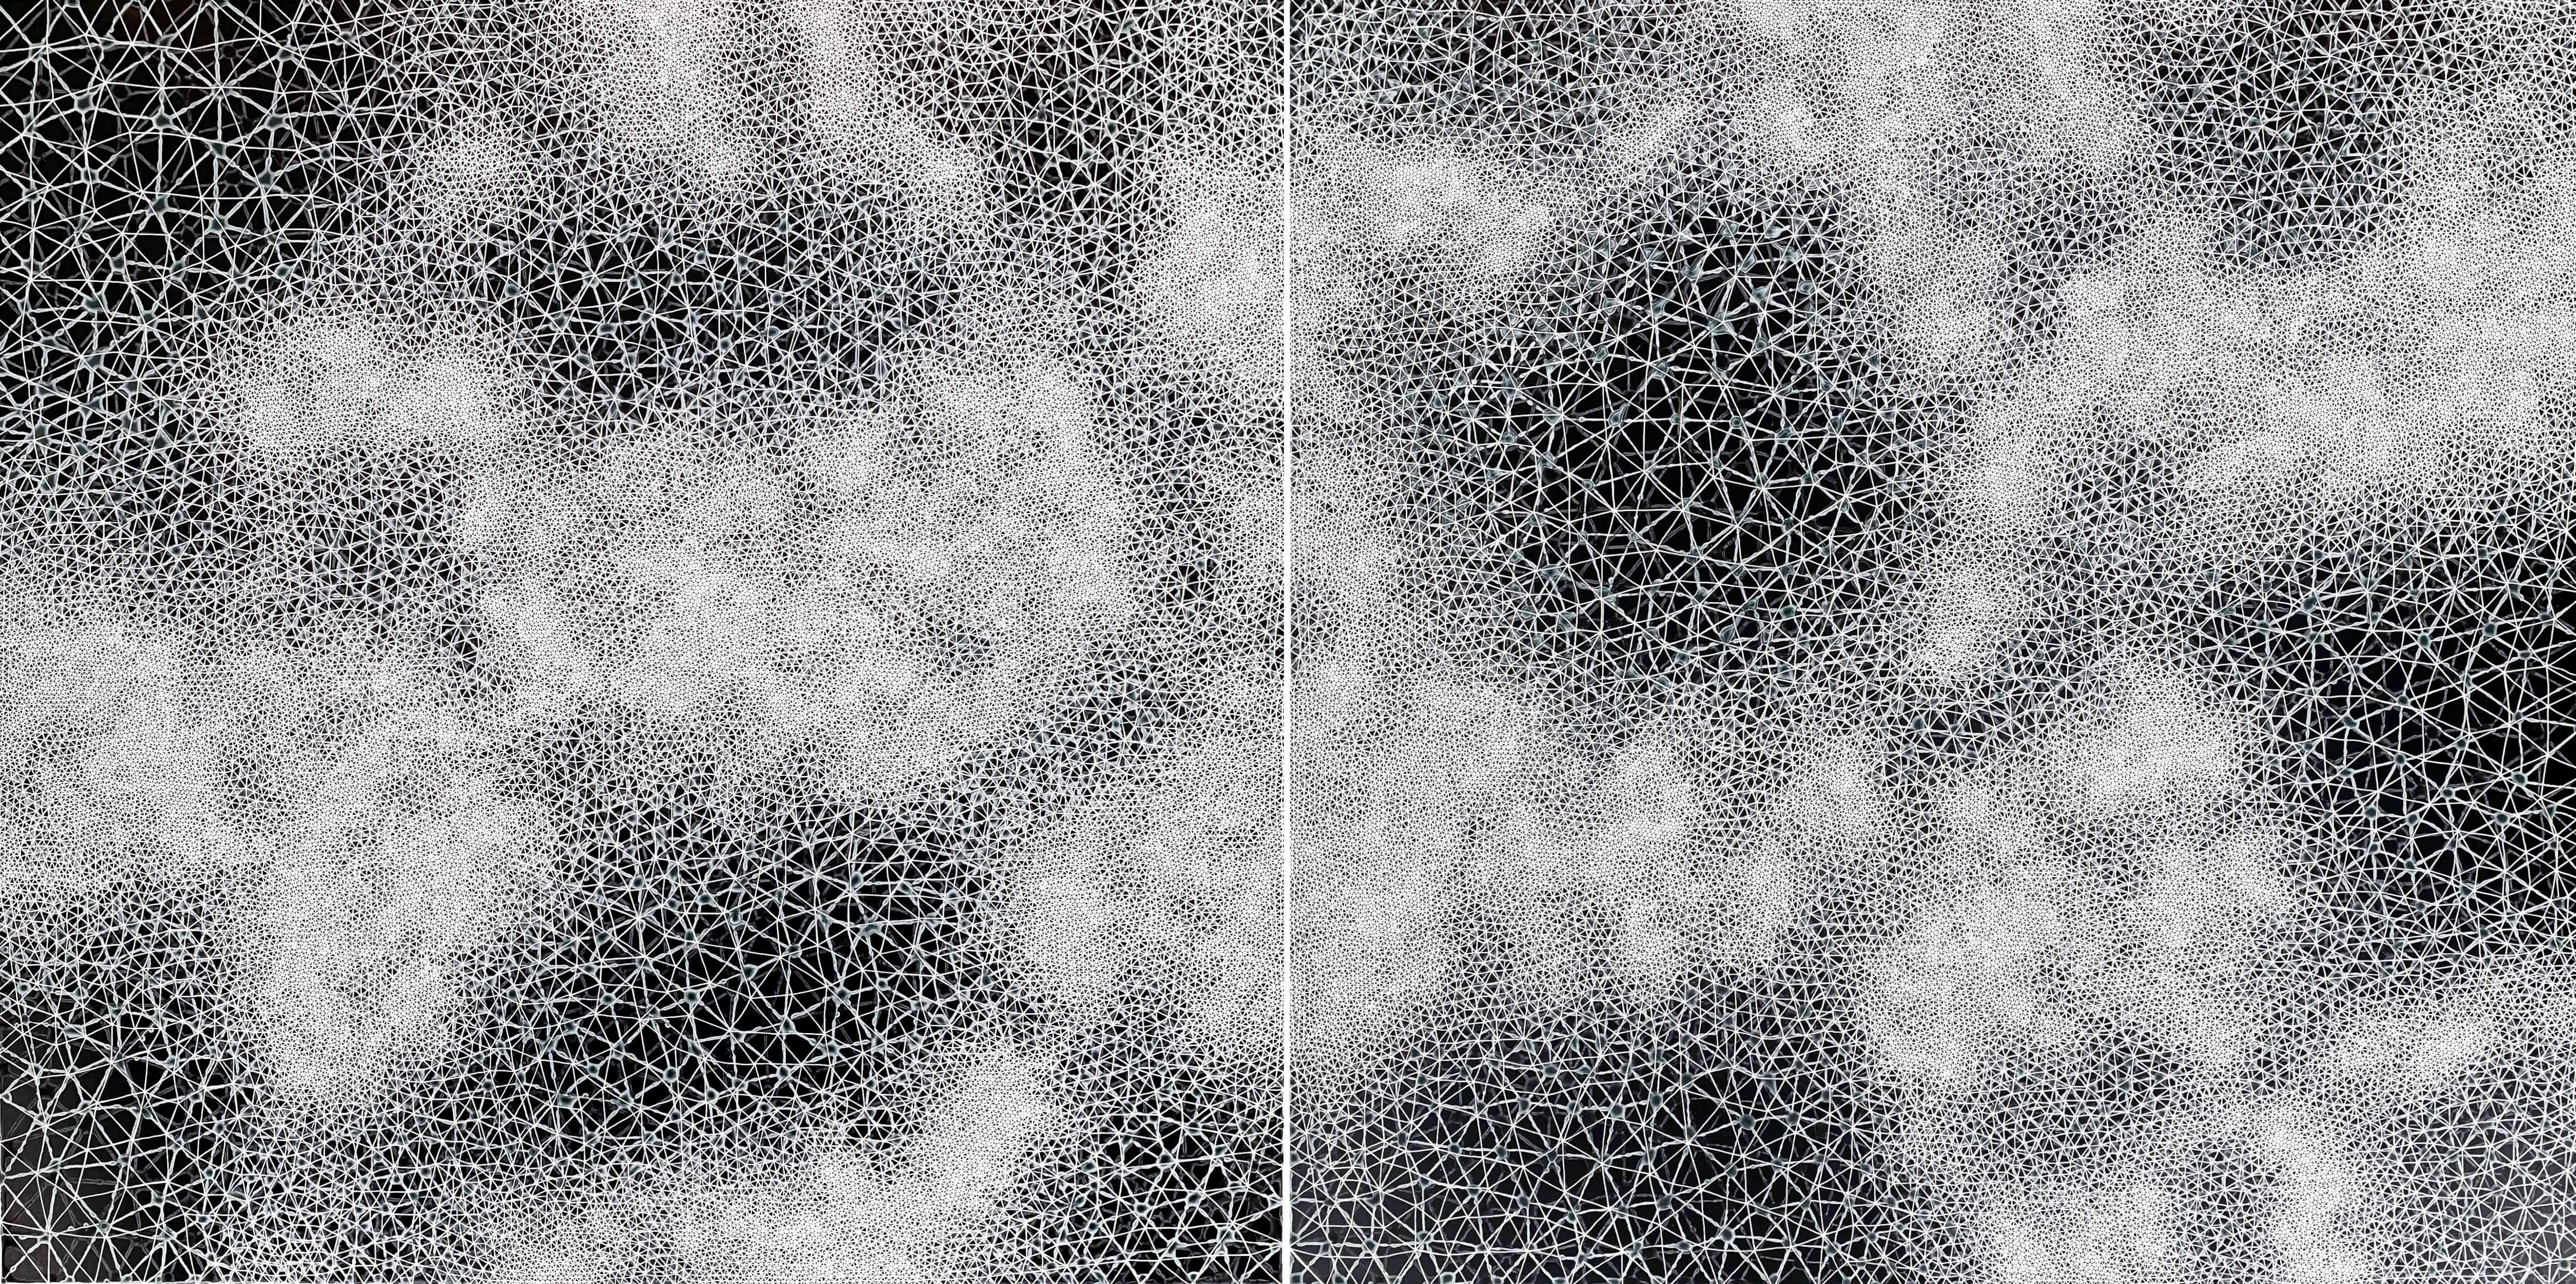 Abstract Painting Hadley Radt - Cohérence - peinture abstraite géométrique diptyque en noir et blanc